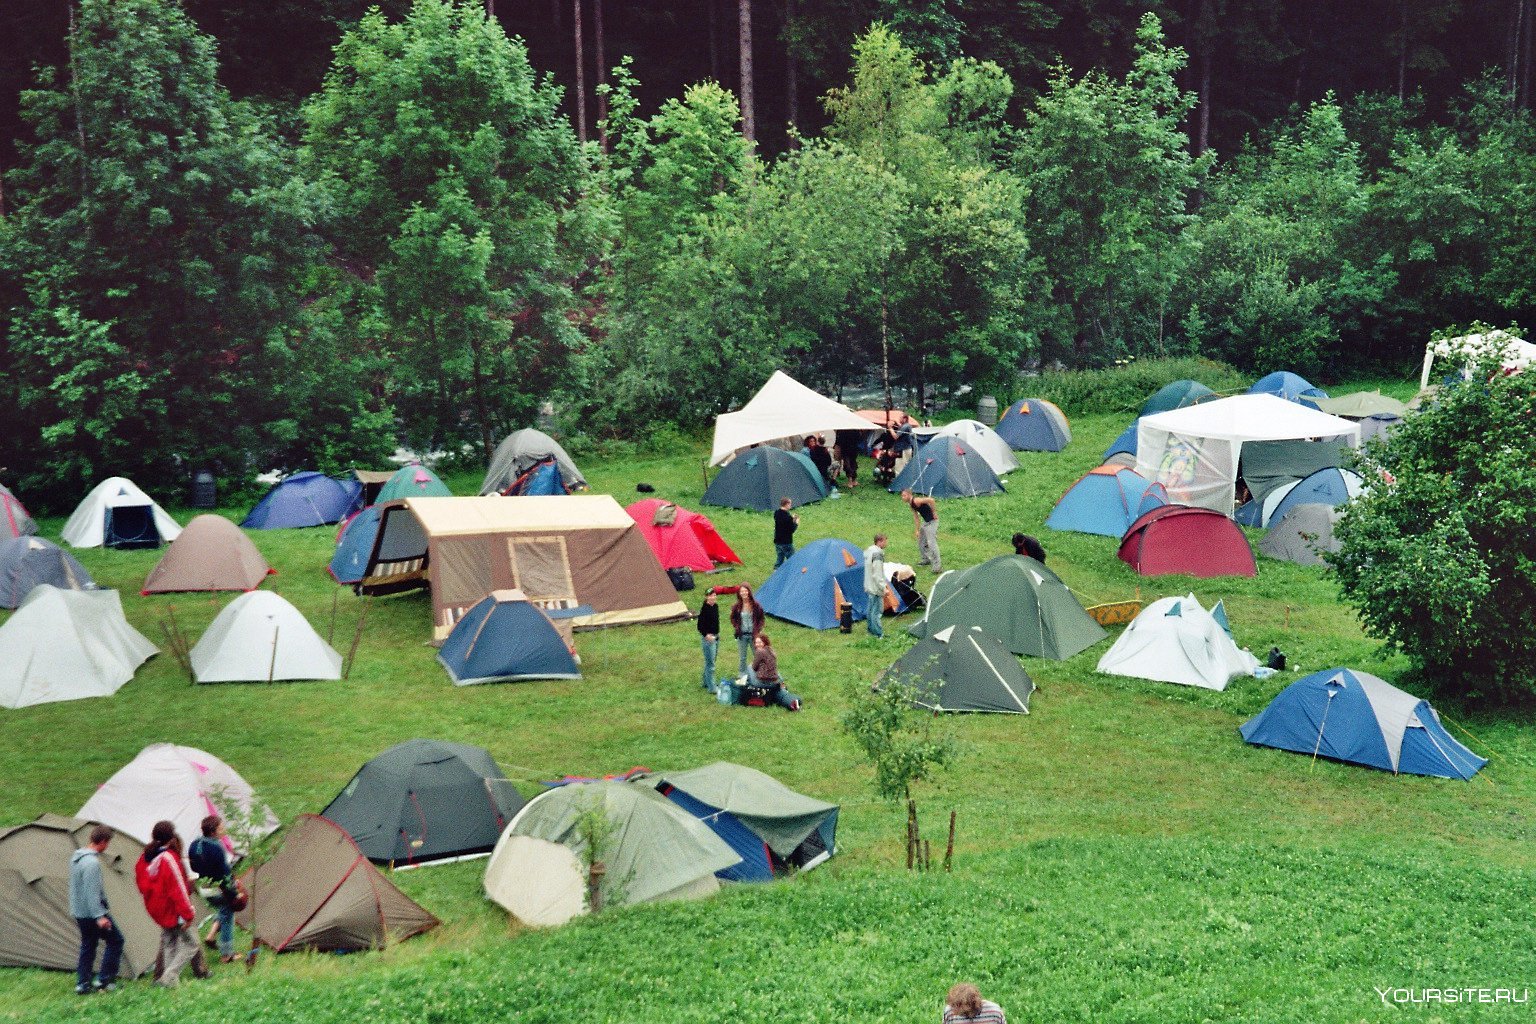 The camp left. Палаточный лагерь Camp 2050. Палаточный лагерь Висимские Поляны. Палаточный кемпинг Висимские Поляны. Глэмпинг палаточный лагерь.